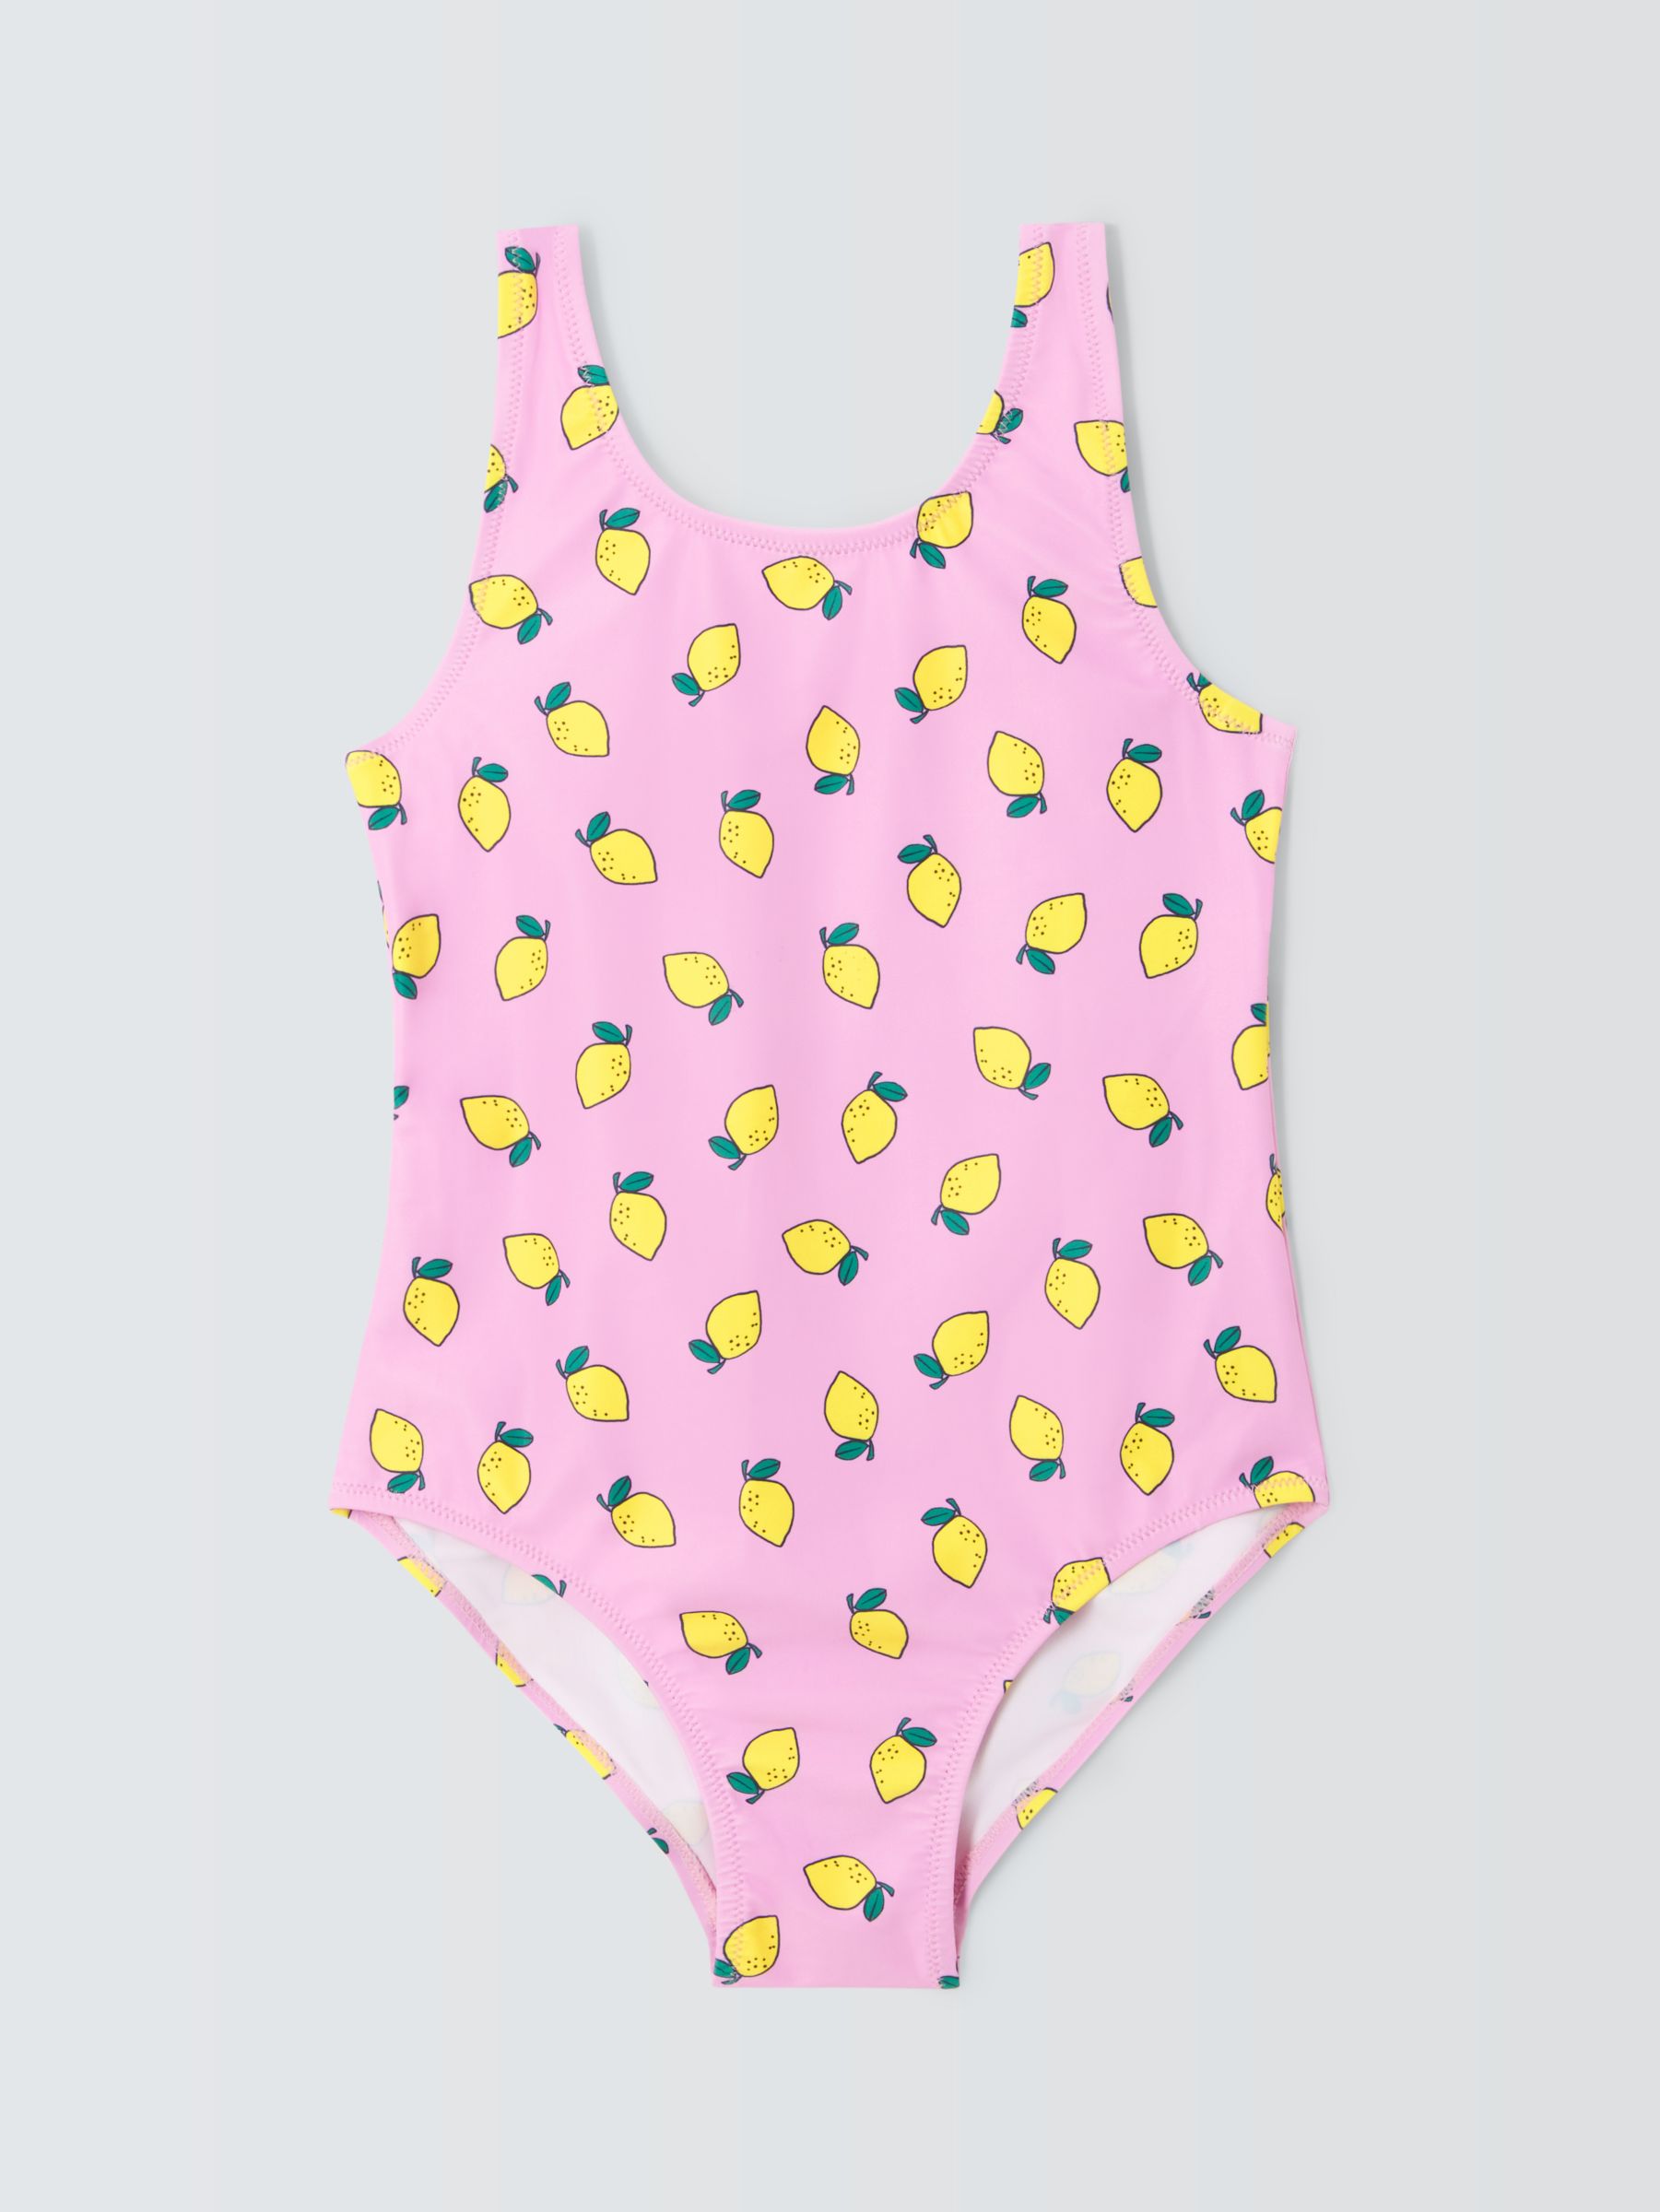 John Lewis ANYDAY Kids' Lemon Print Swimsuit, Pink/Multi, 9 years